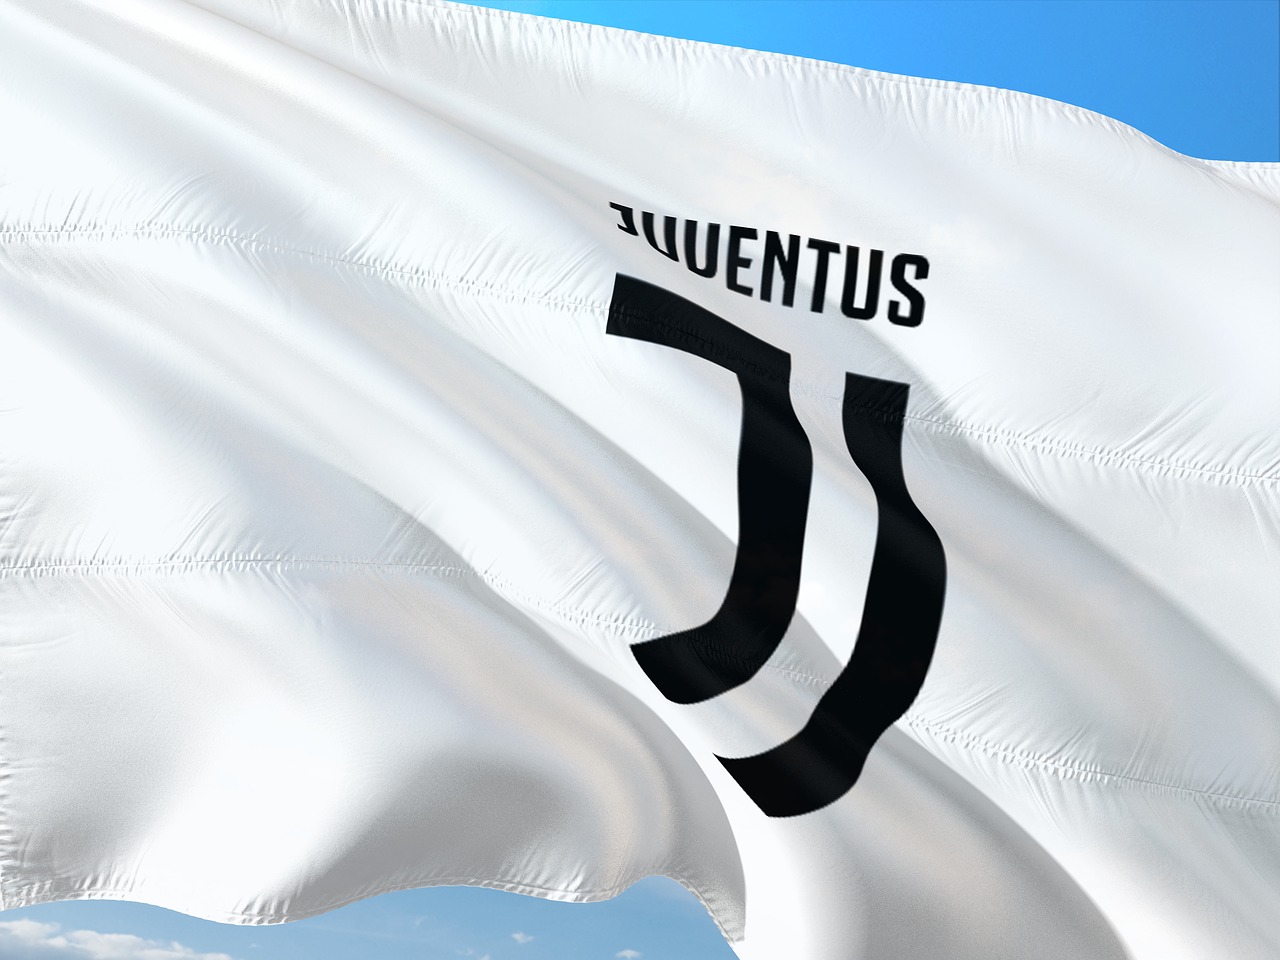 Bandiera della Juventus